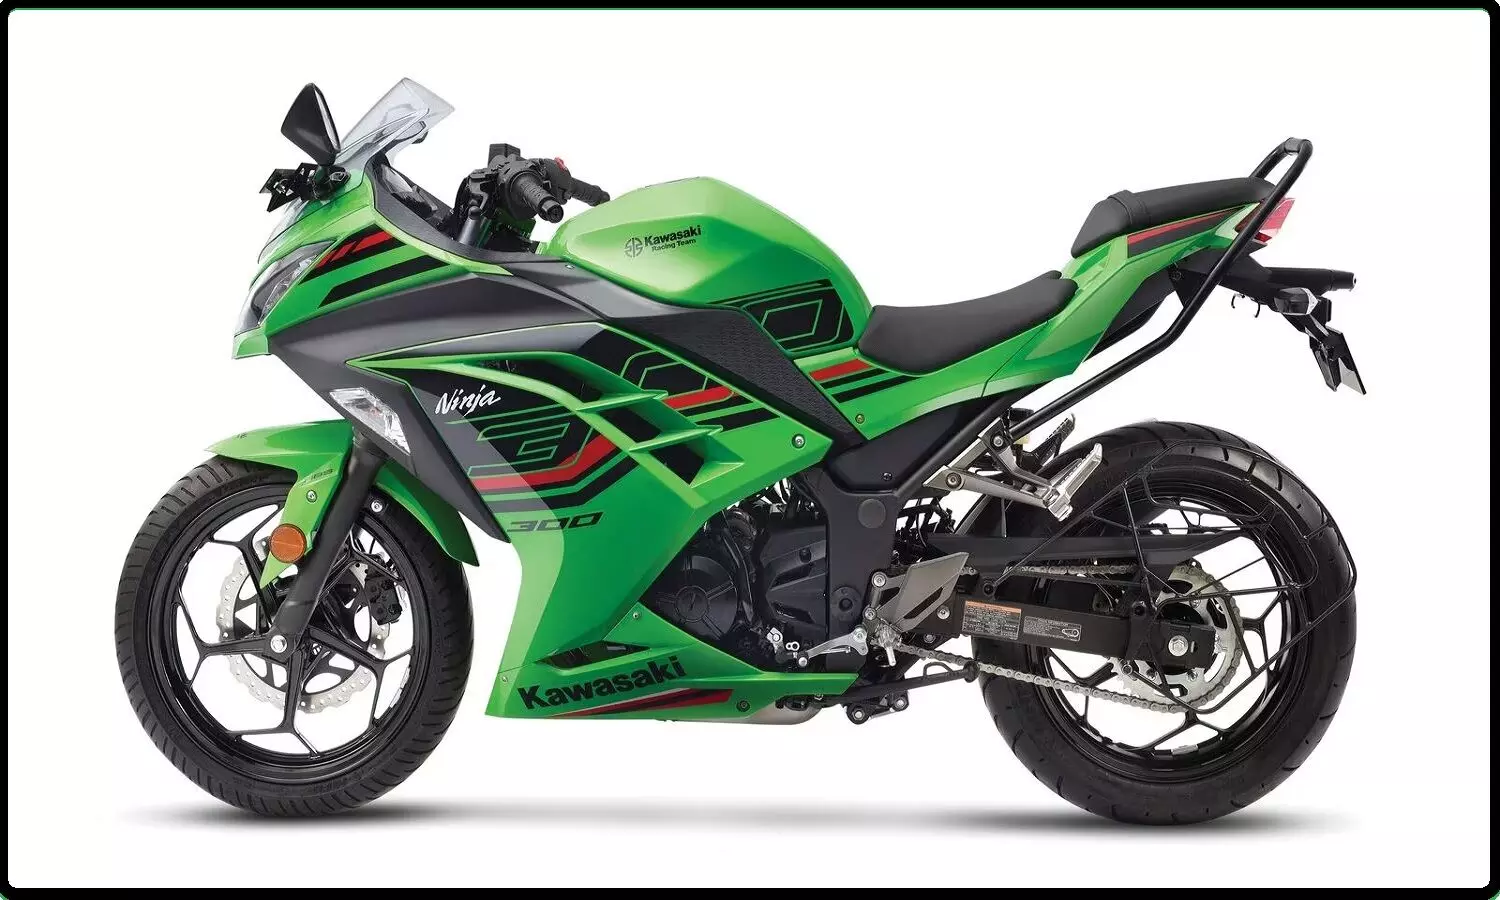 2023 Kawasaki Ninja 300 के स्पेक्स, फीचर्स और कीमत जानें